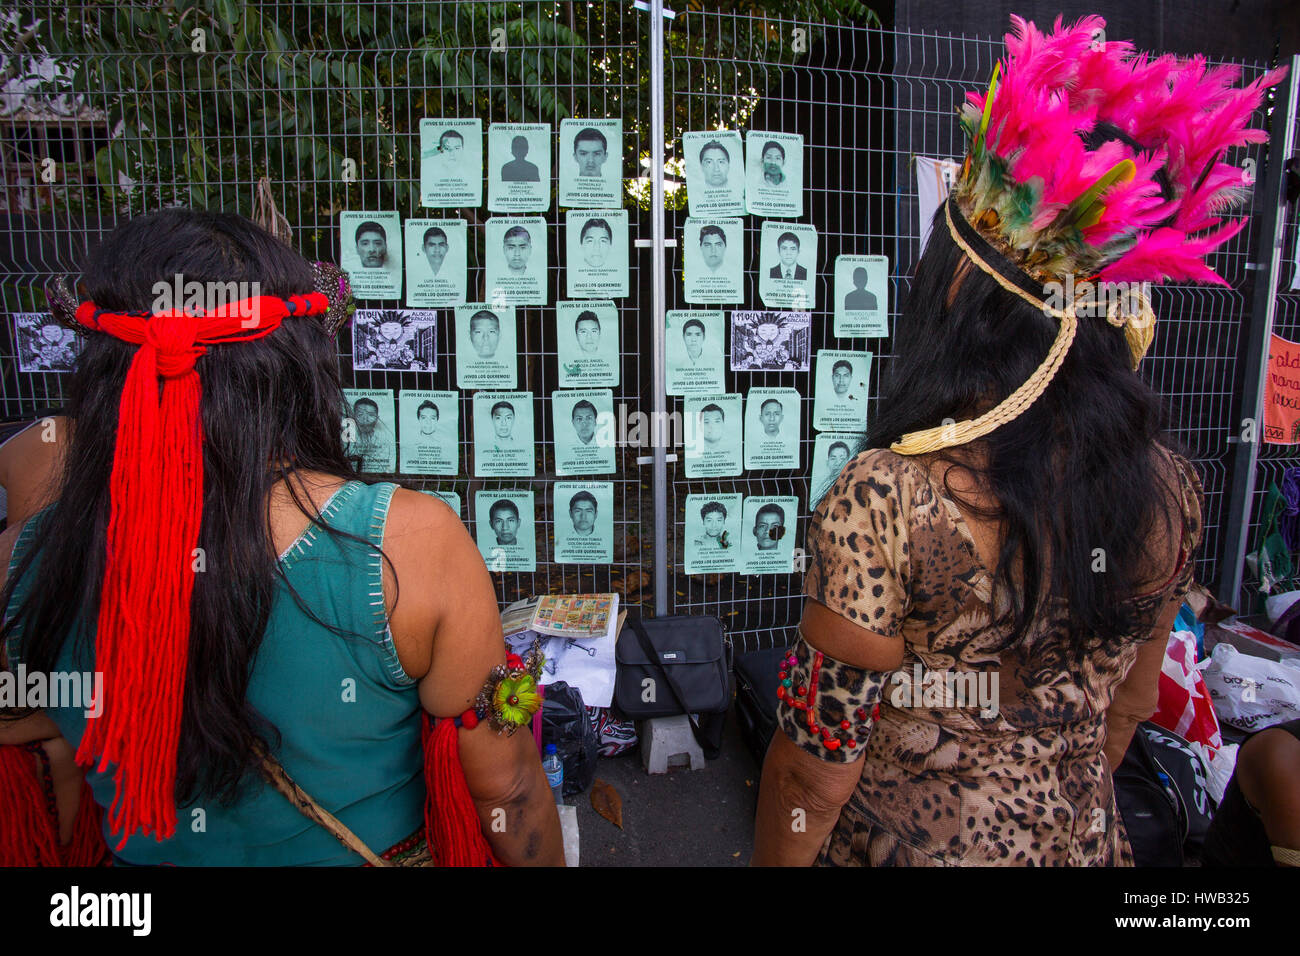 Journée indienne à Rio de Janeiro, les Indiens mis dans un mur de photos de personnes qui ont disparu au Mexique, Maracana, Rio de Janeiro, Brésil Banque D'Images